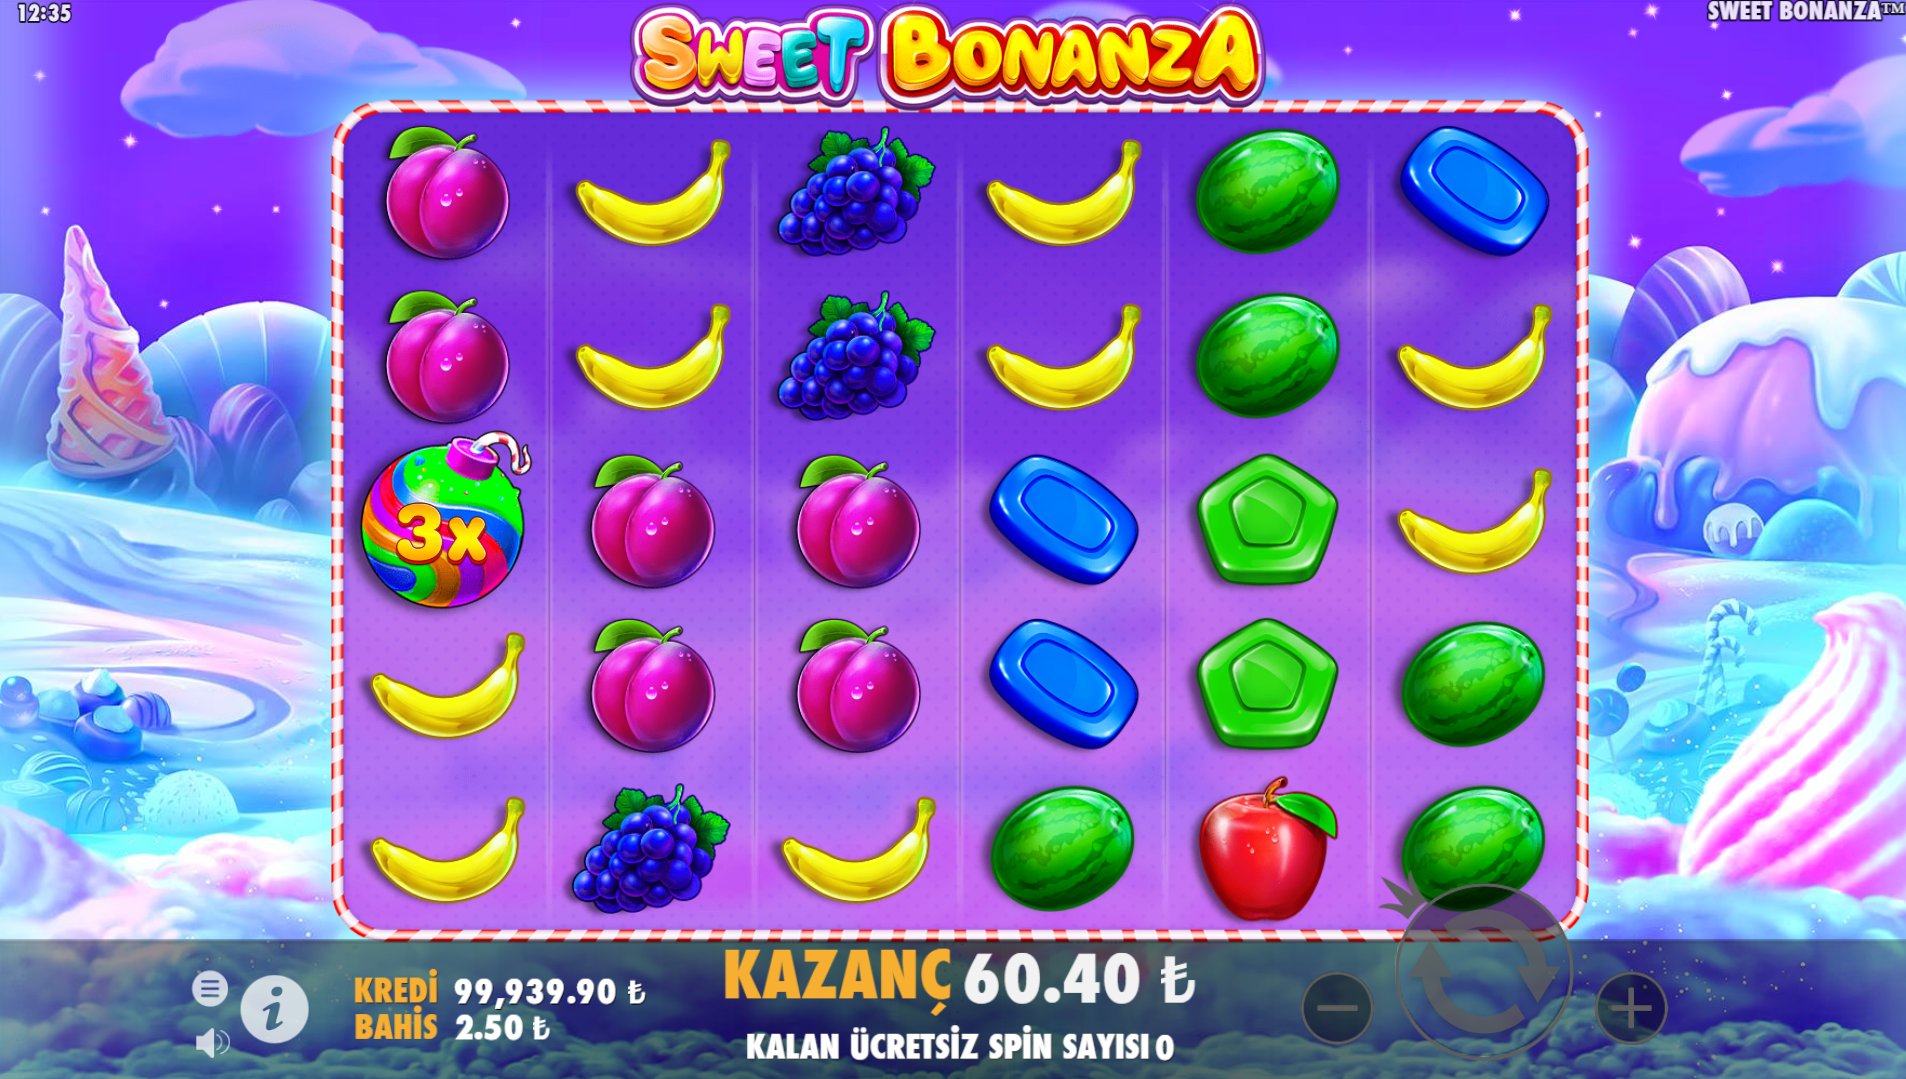 Sweet Bonanza Oyununa Başlamadan Önce Önerilen Stratejiler